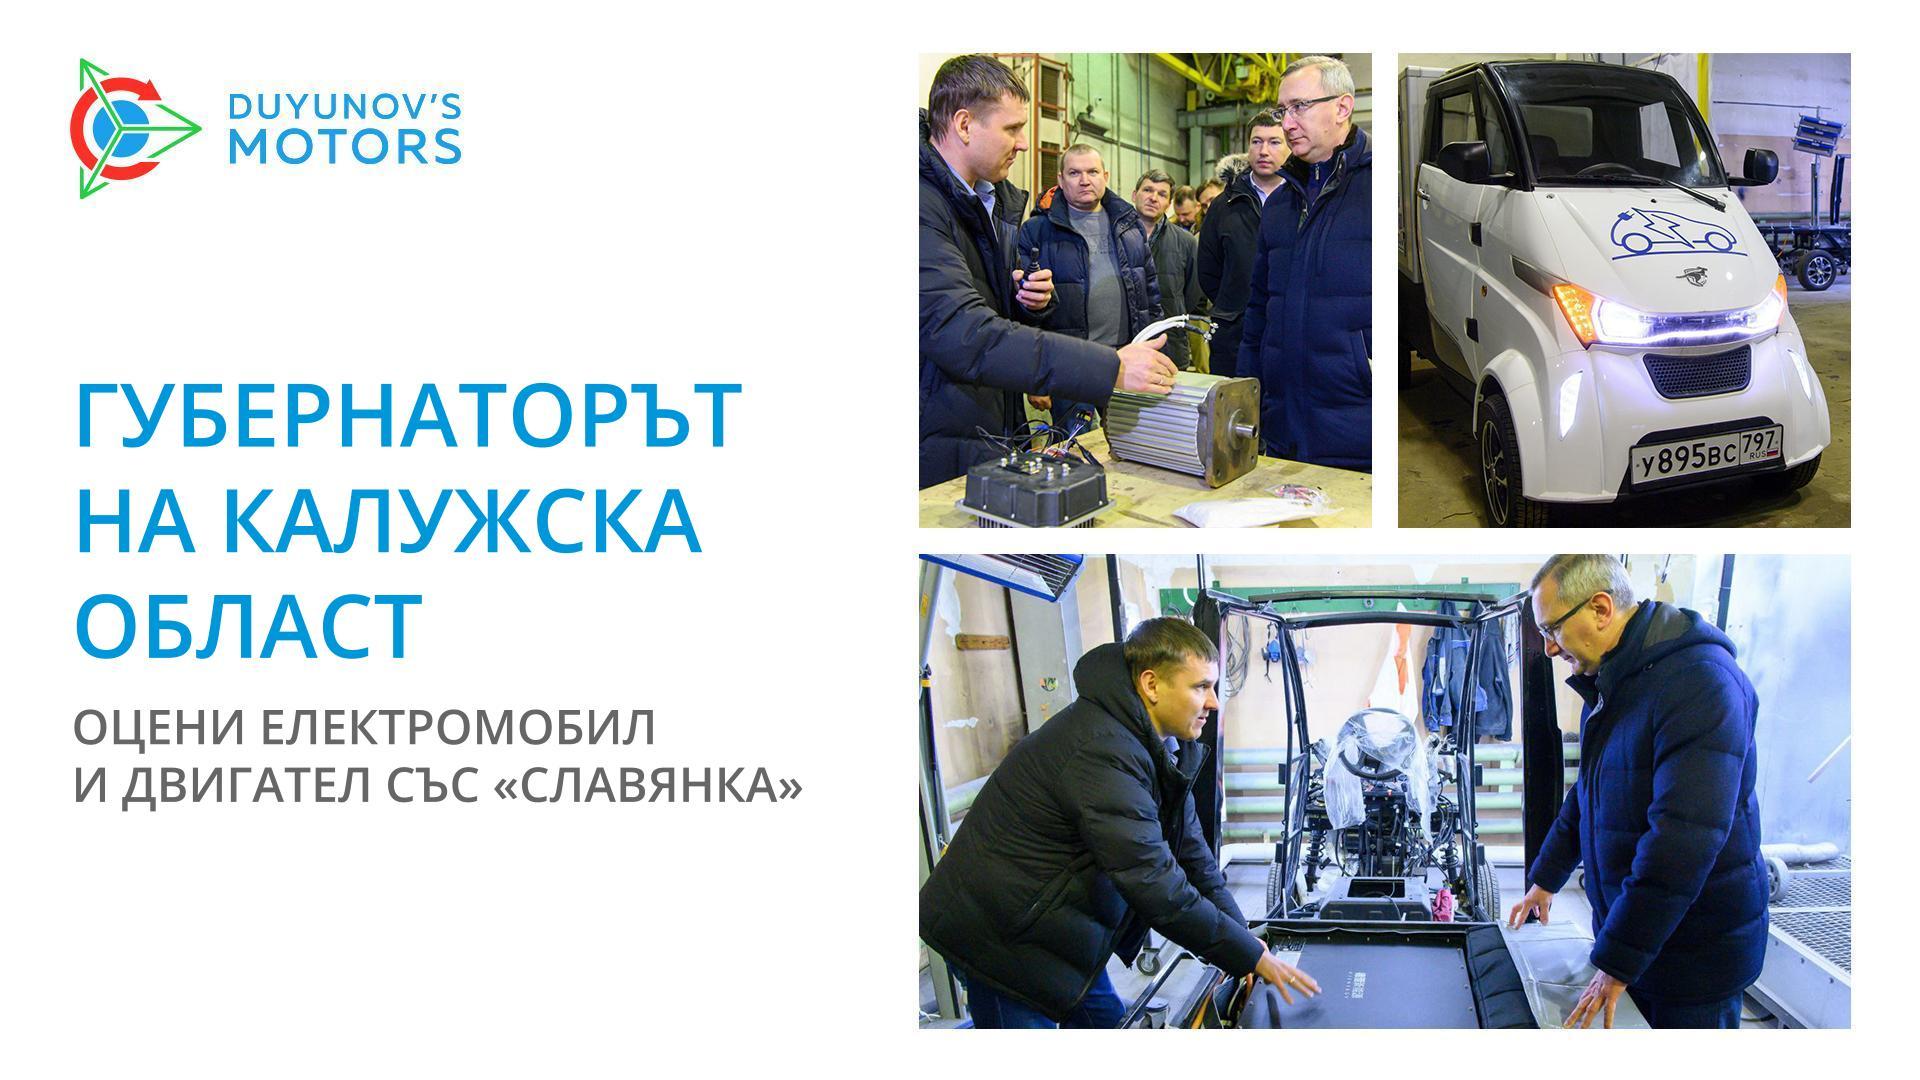 Губернаторът на Калужска област оцени електромобил и двигател със «Славянка»